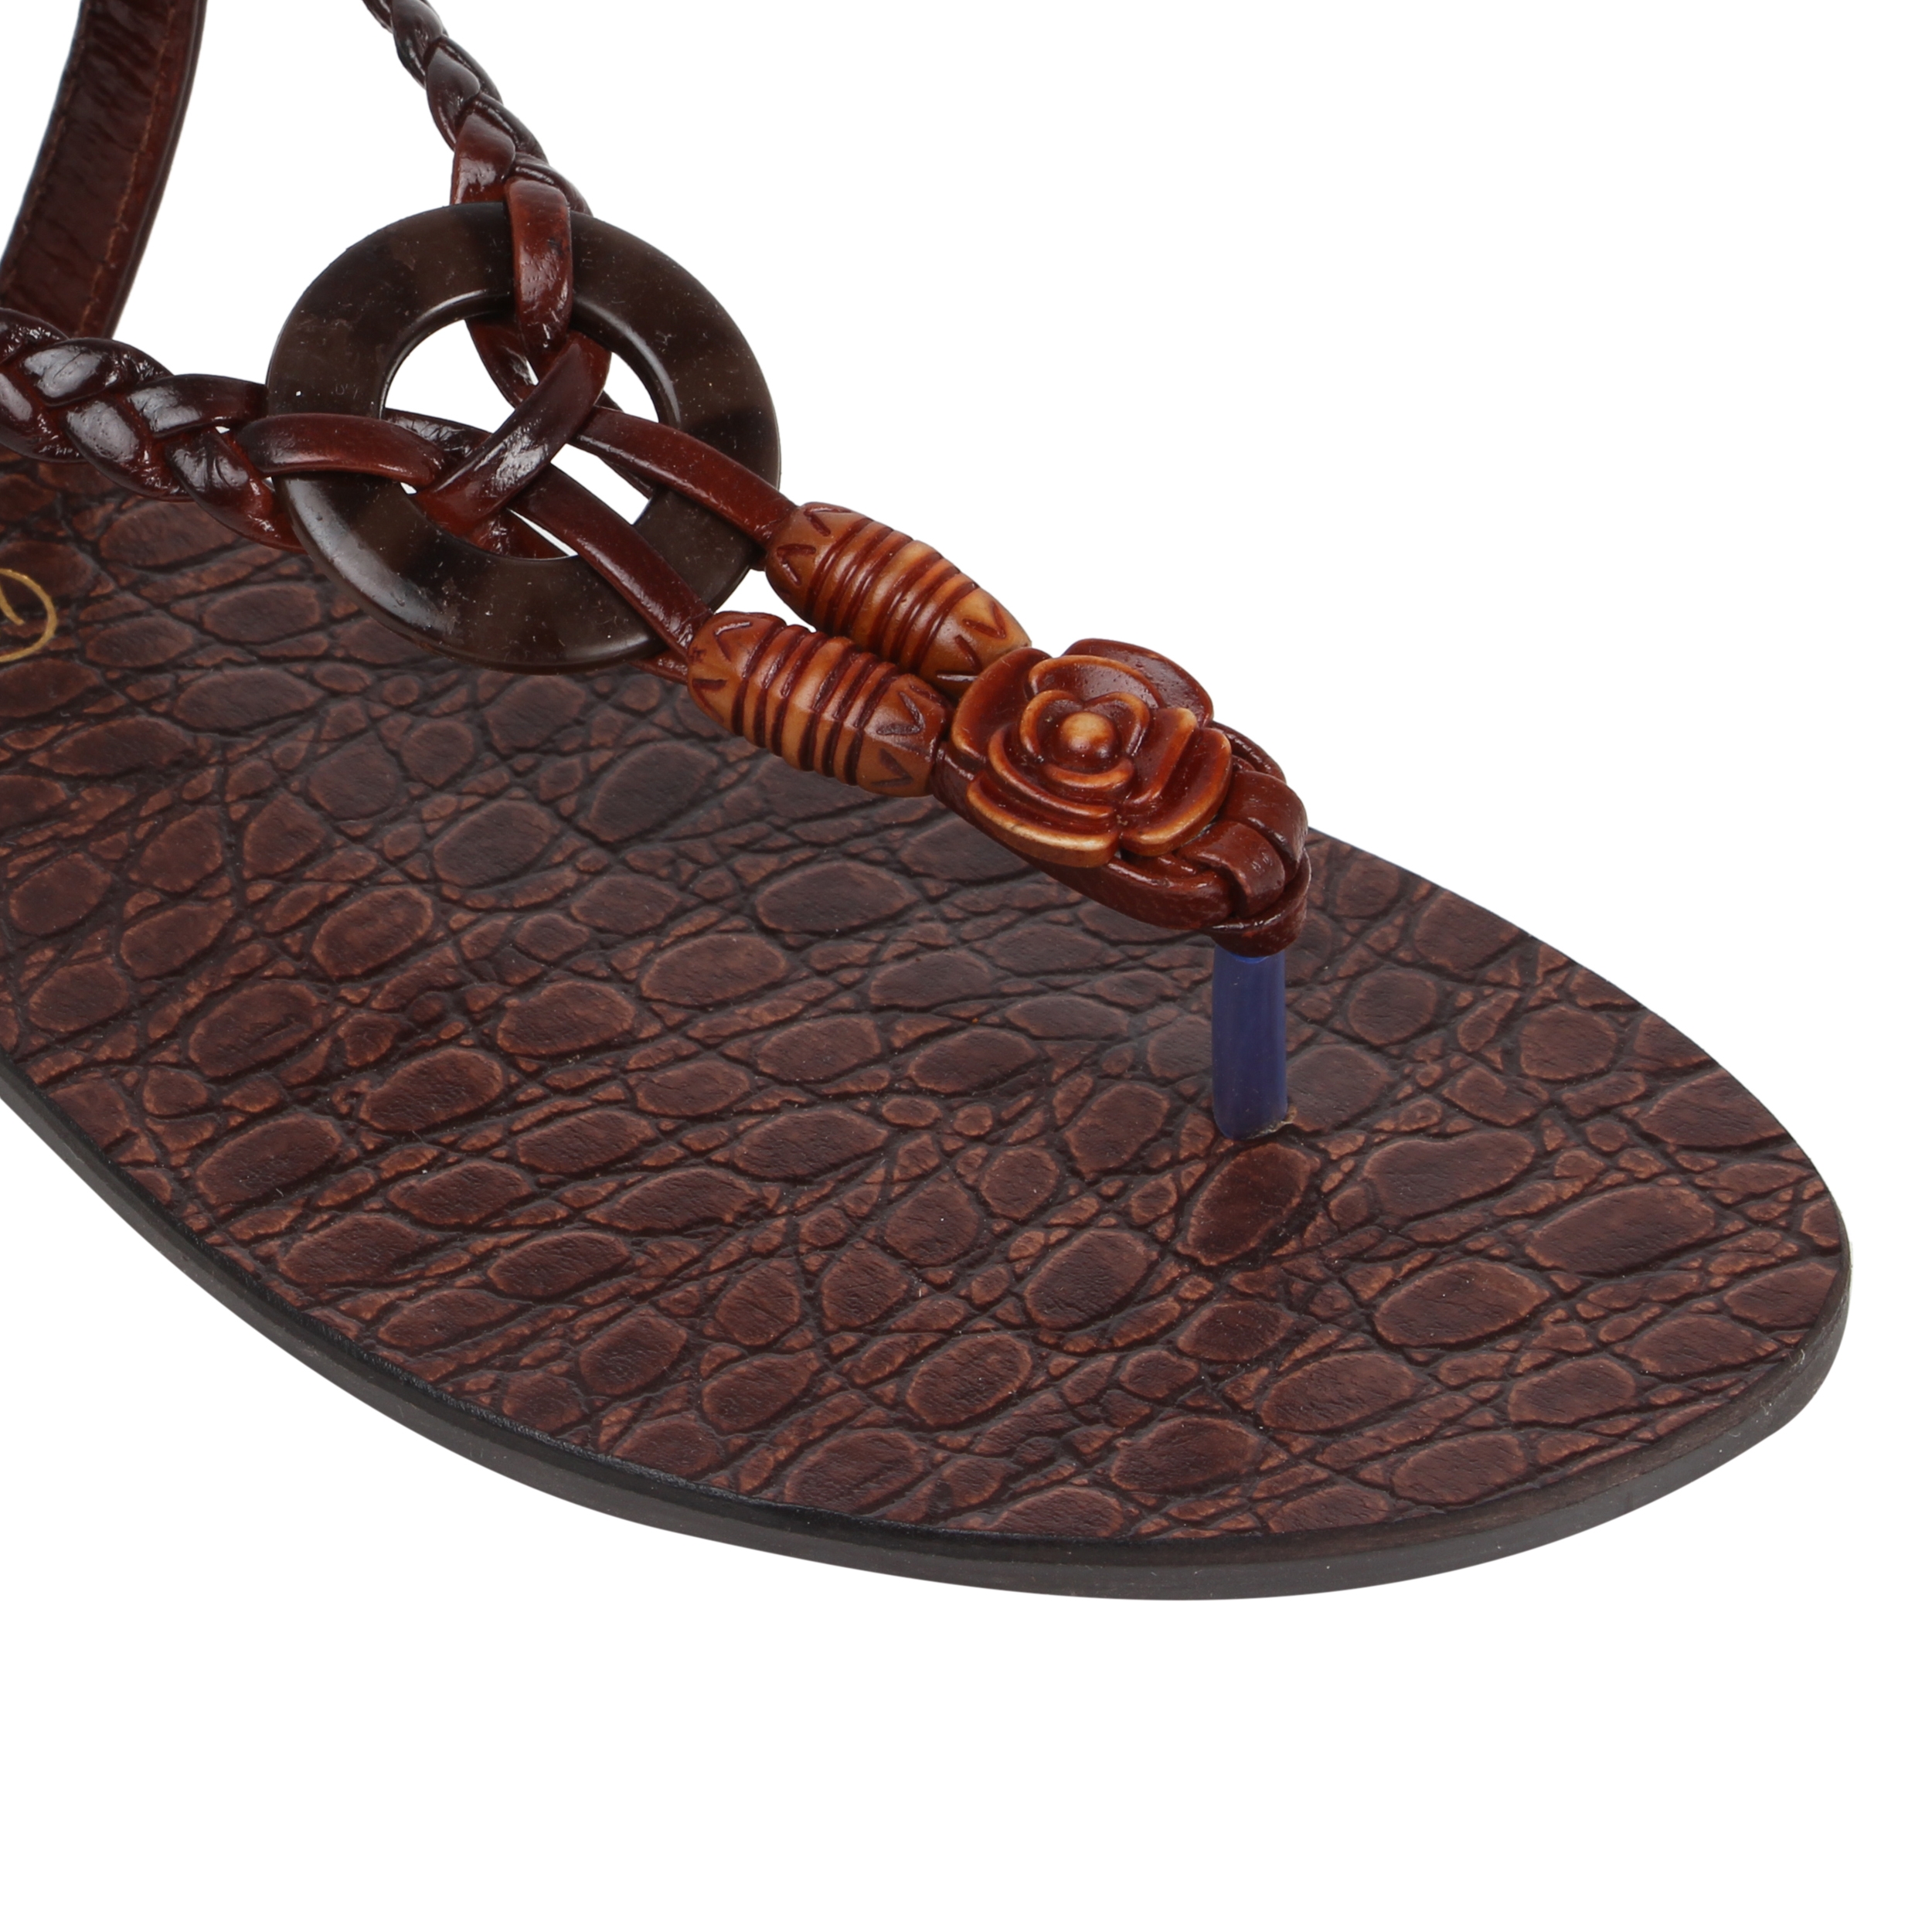 CATWALK | African Wood Embellished Sandals